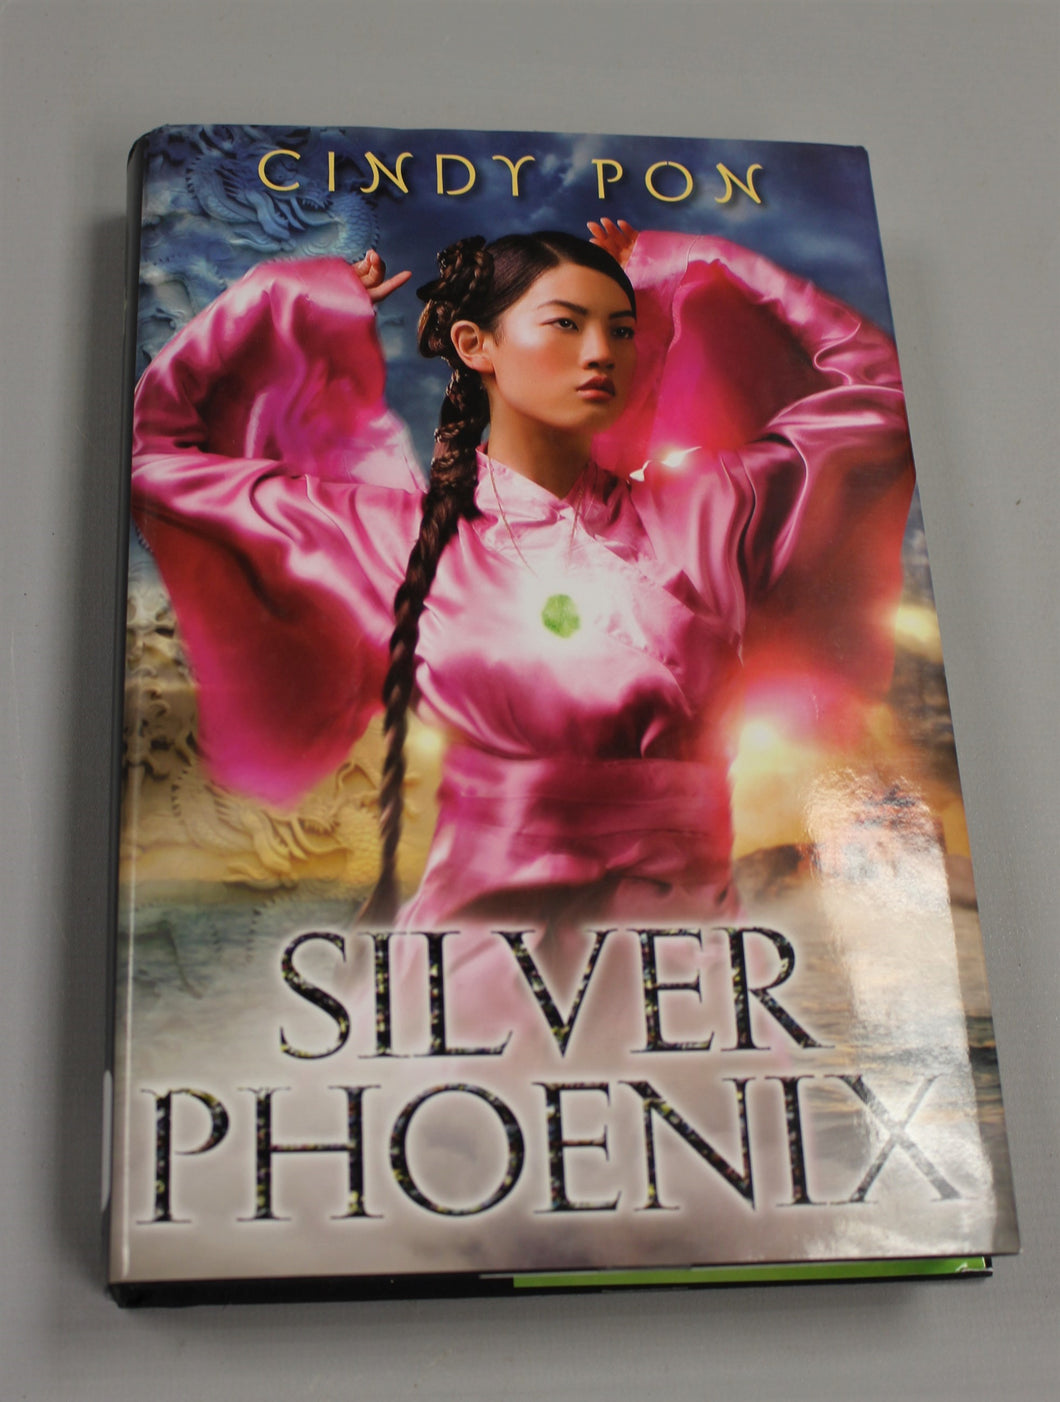 Silver Phoenix by Cindy Pon